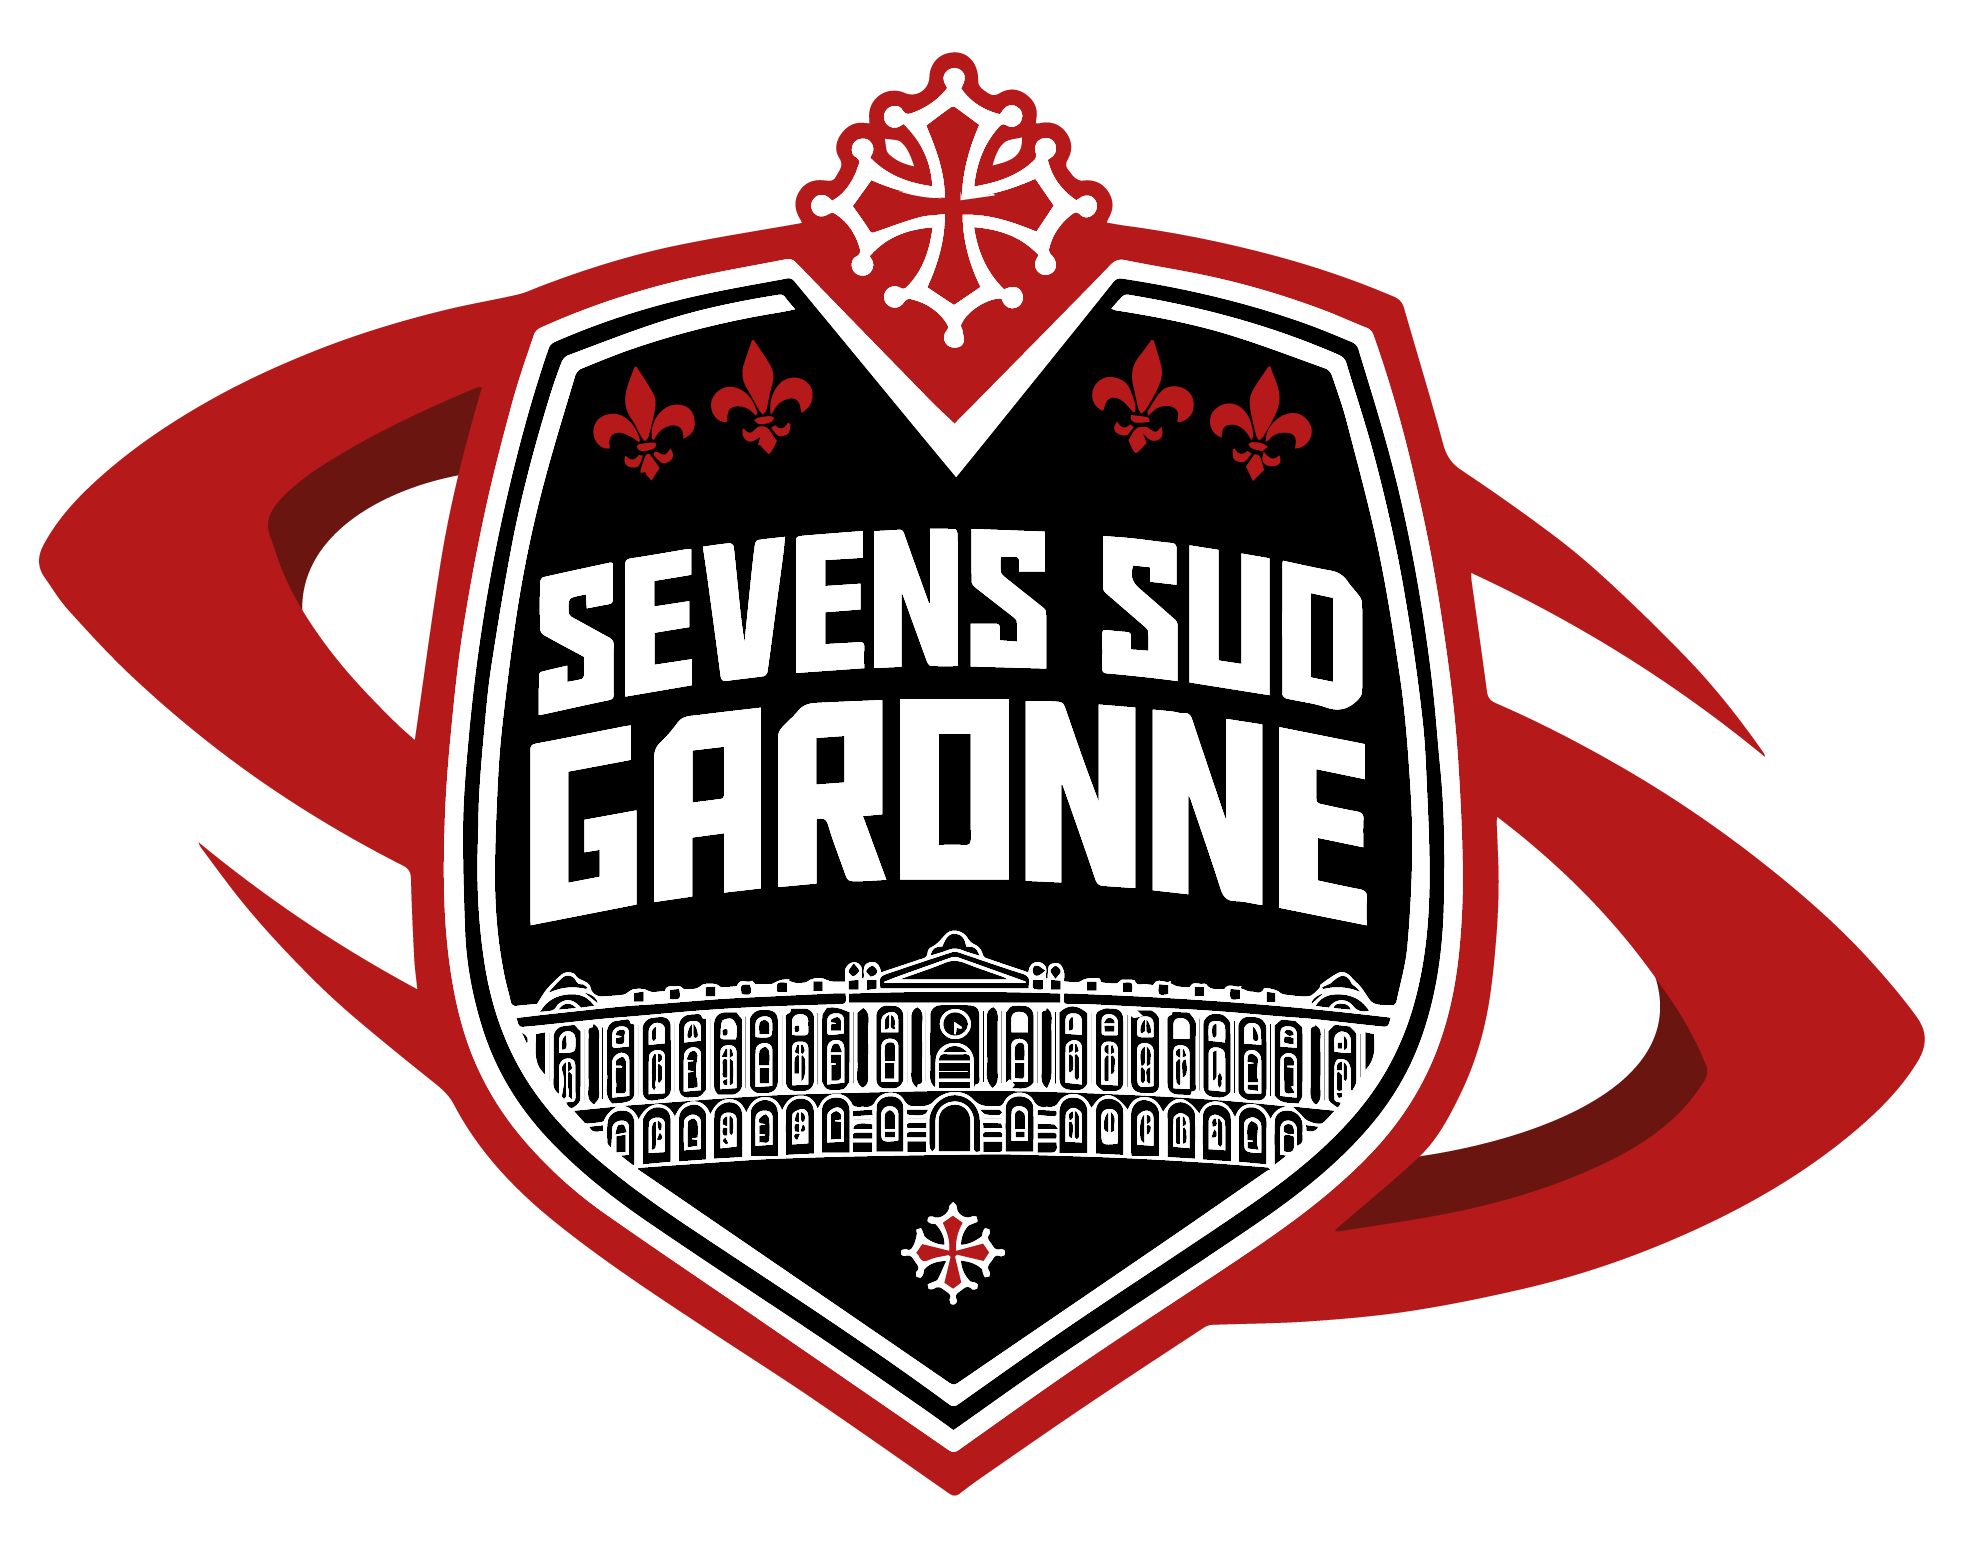 Seven sud Garonne